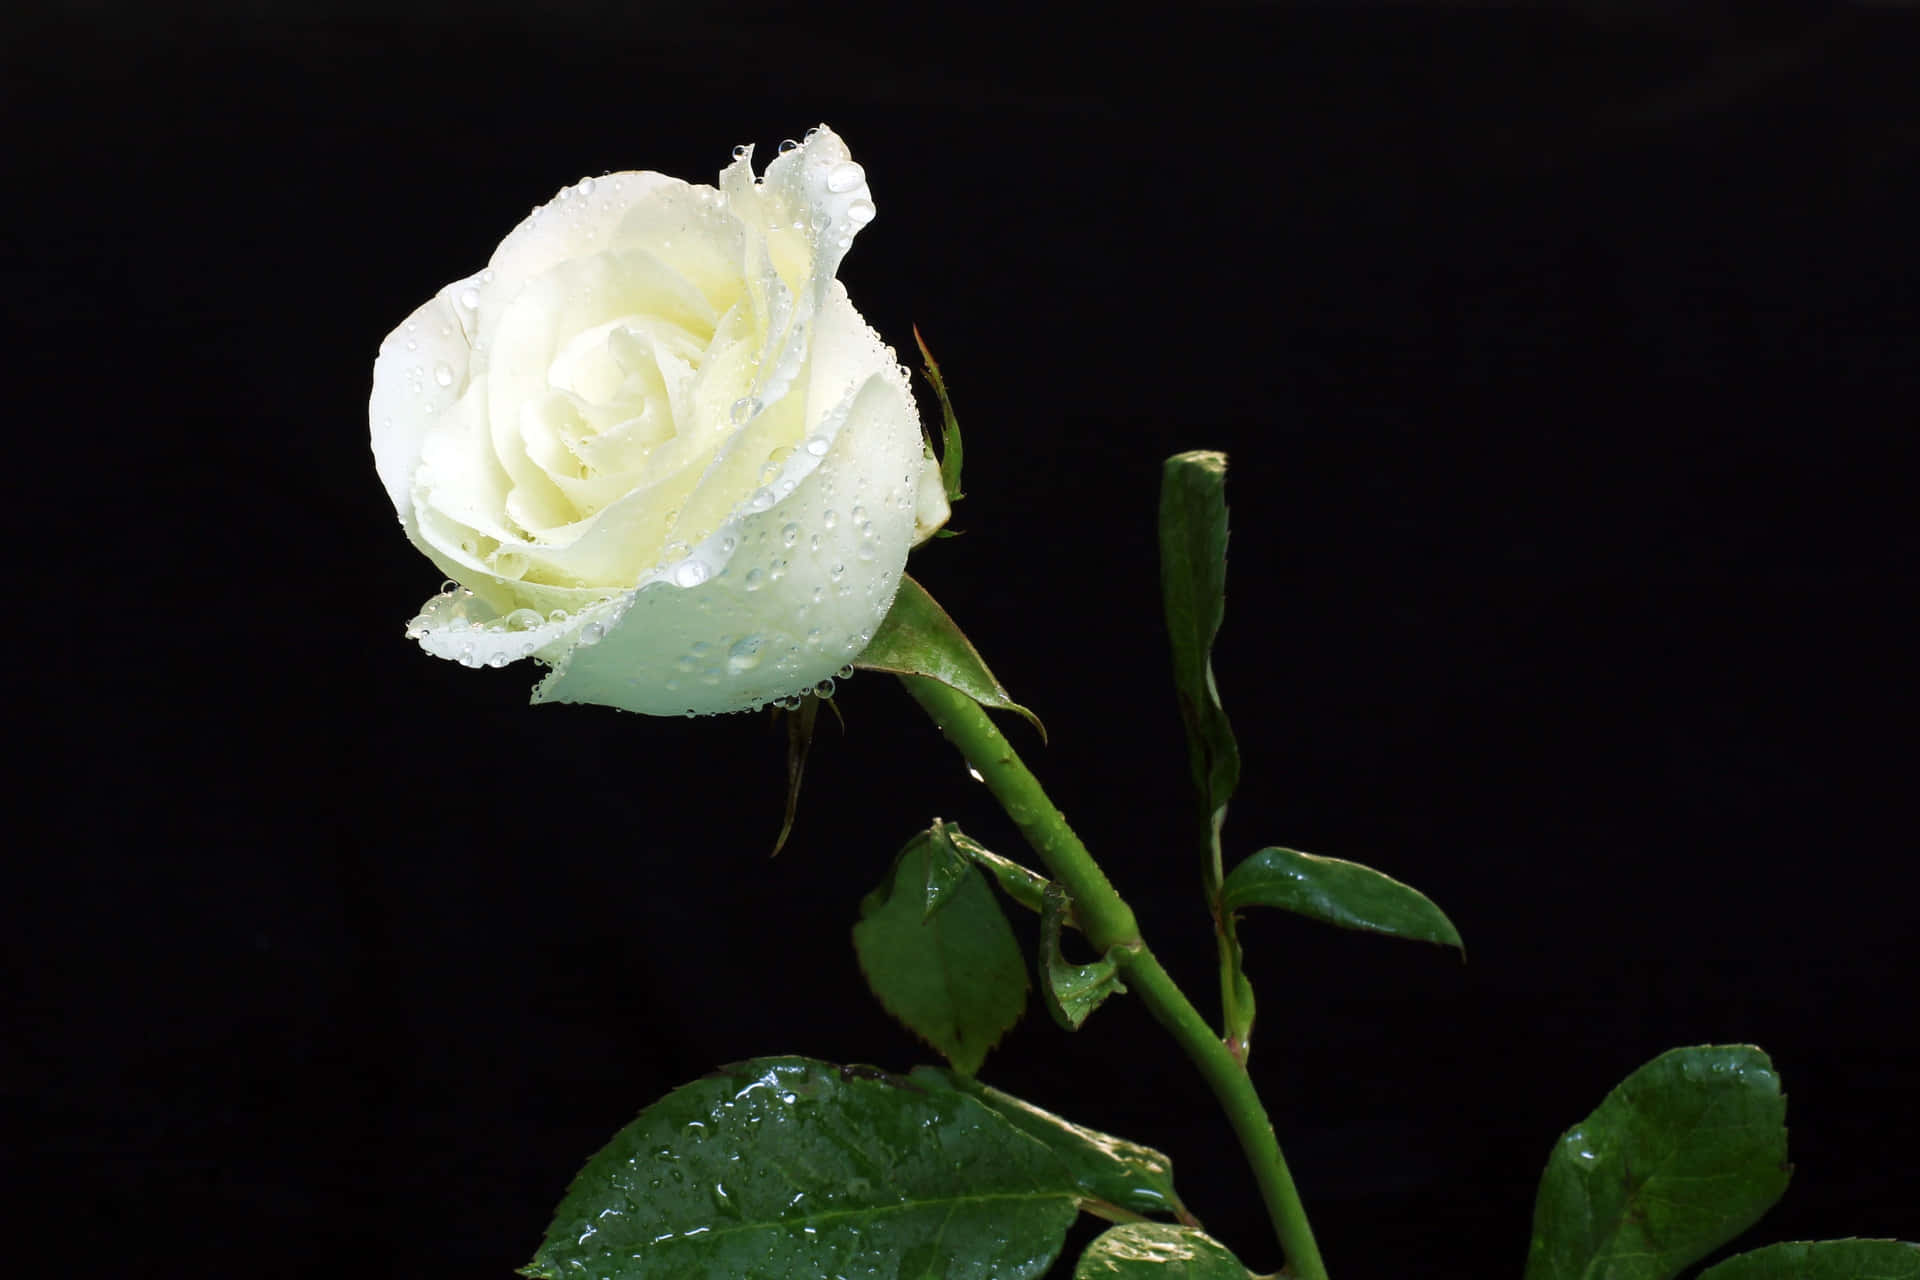 A Delicate White Rose